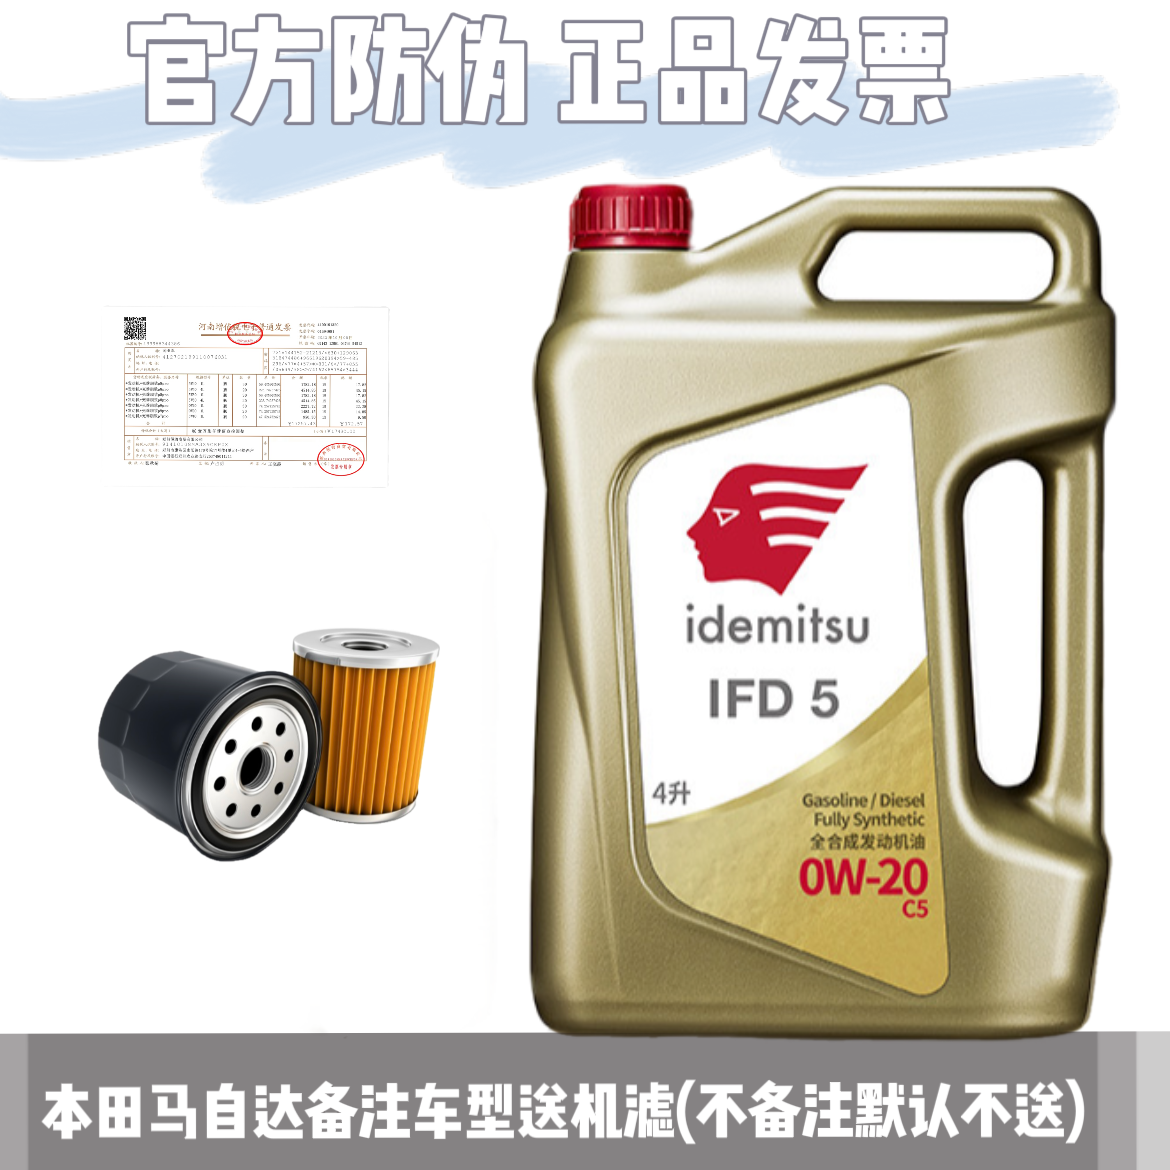 出光IFD5全合成0W20机油发动机润滑油金桶马自达机油原厂正品旗舰